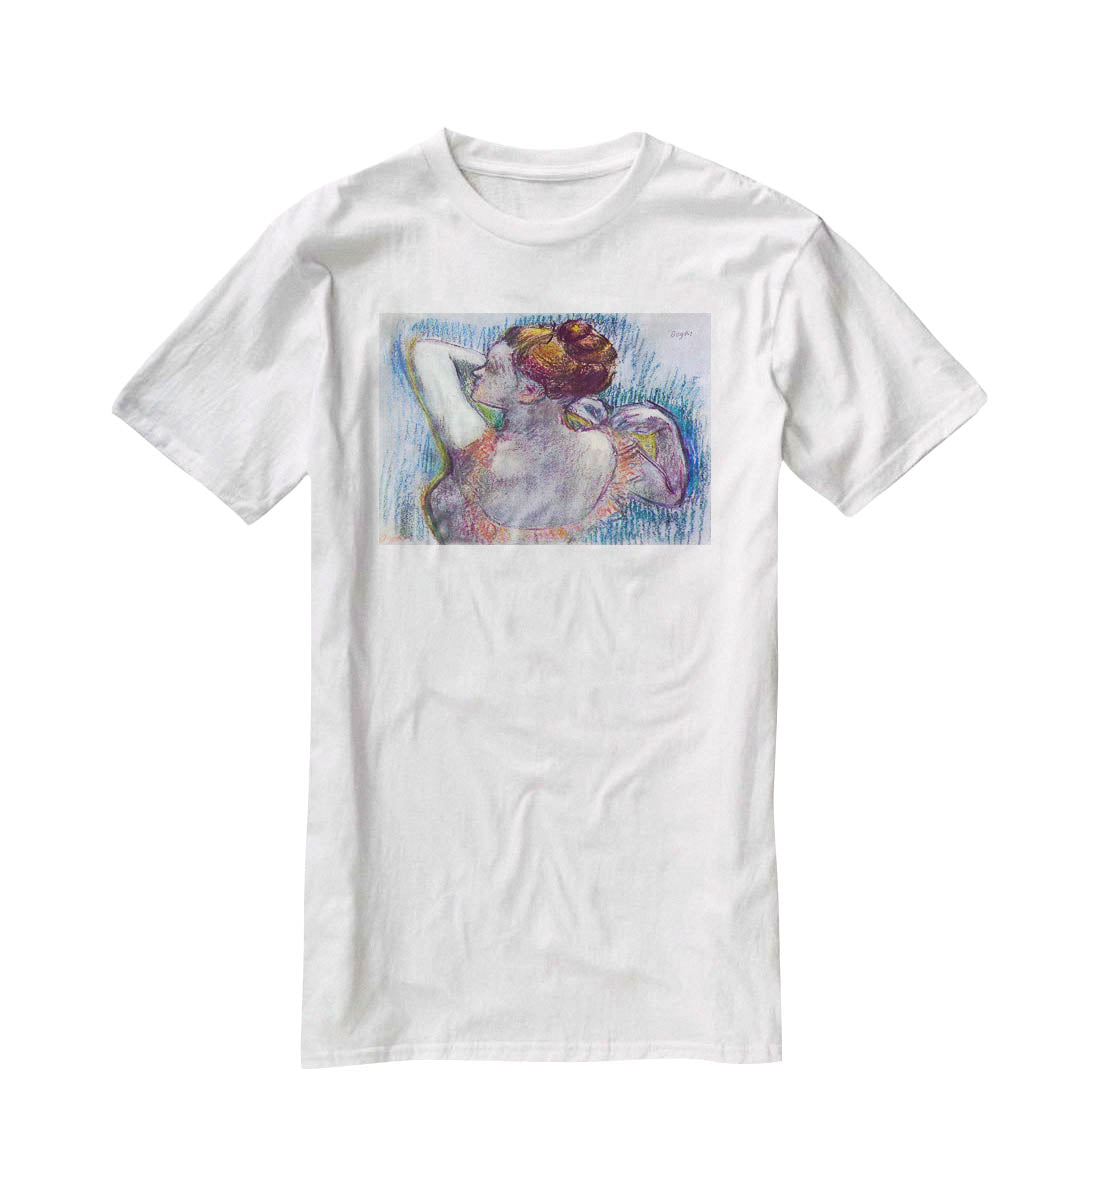 Dancer by Degas T-Shirt - Canvas Art Rocks - 5